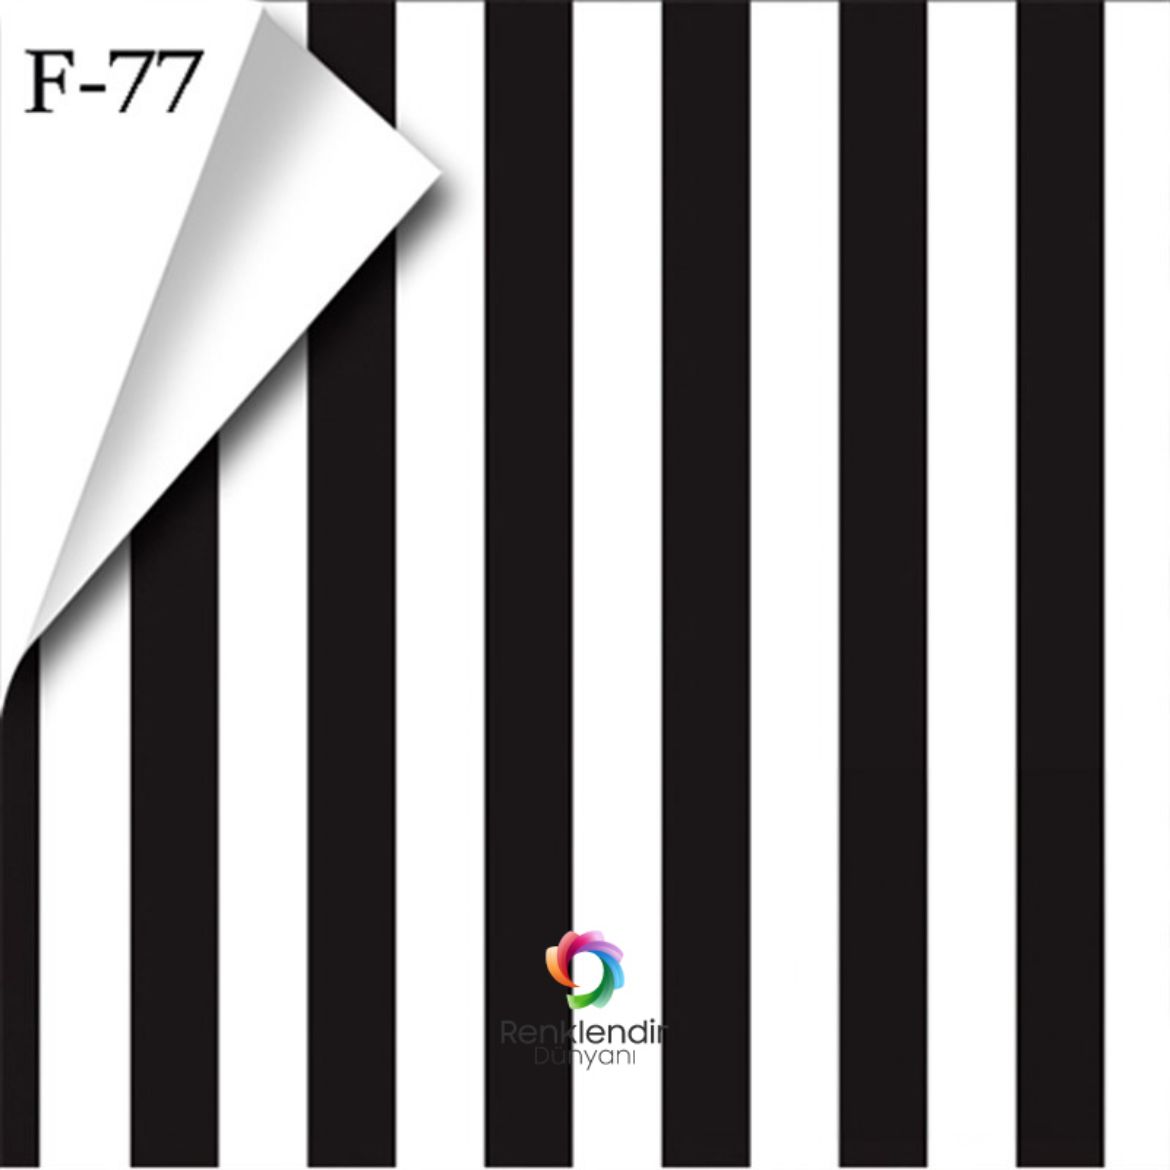 Siyah Beyaz Çizgi Desenli Tezgah Arası Folyo F-77 resmi